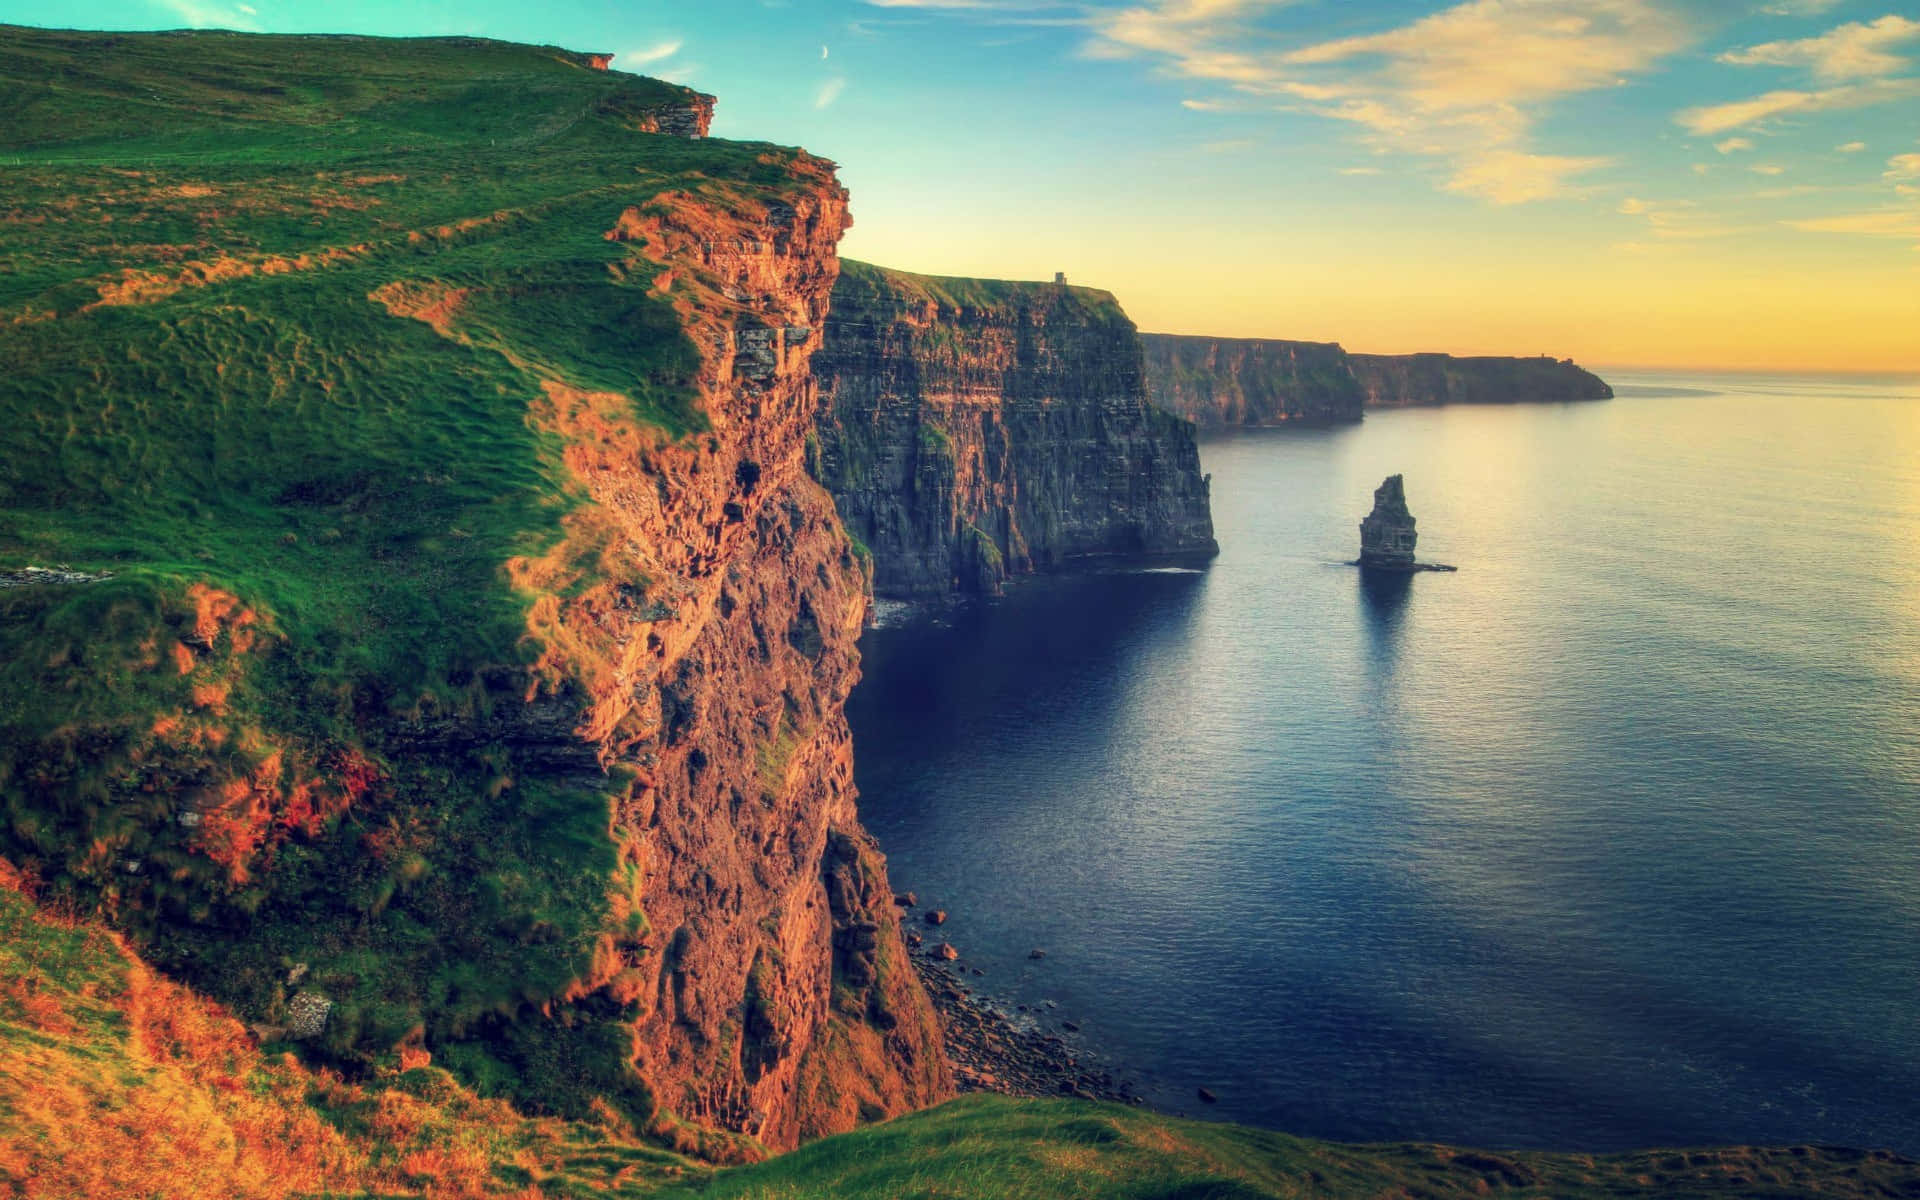 Tải xuống Ireland Wallpaper Downloads và tận hưởng một chuyến phiêu lưu tại đất nước xanh biết bao thú vị. Bạn sẽ được chiêm ngưỡng những cảnh đẹp độc đáo và hình ảnh tuyệt đẹp của Ireland, từ các thành phố sôi động đến các khu rừng trong xanh rực rỡ. Hãy cùng nhau trải nghiệm và khám phá một Ireland hoàn toàn mới với bộ hình nền này.